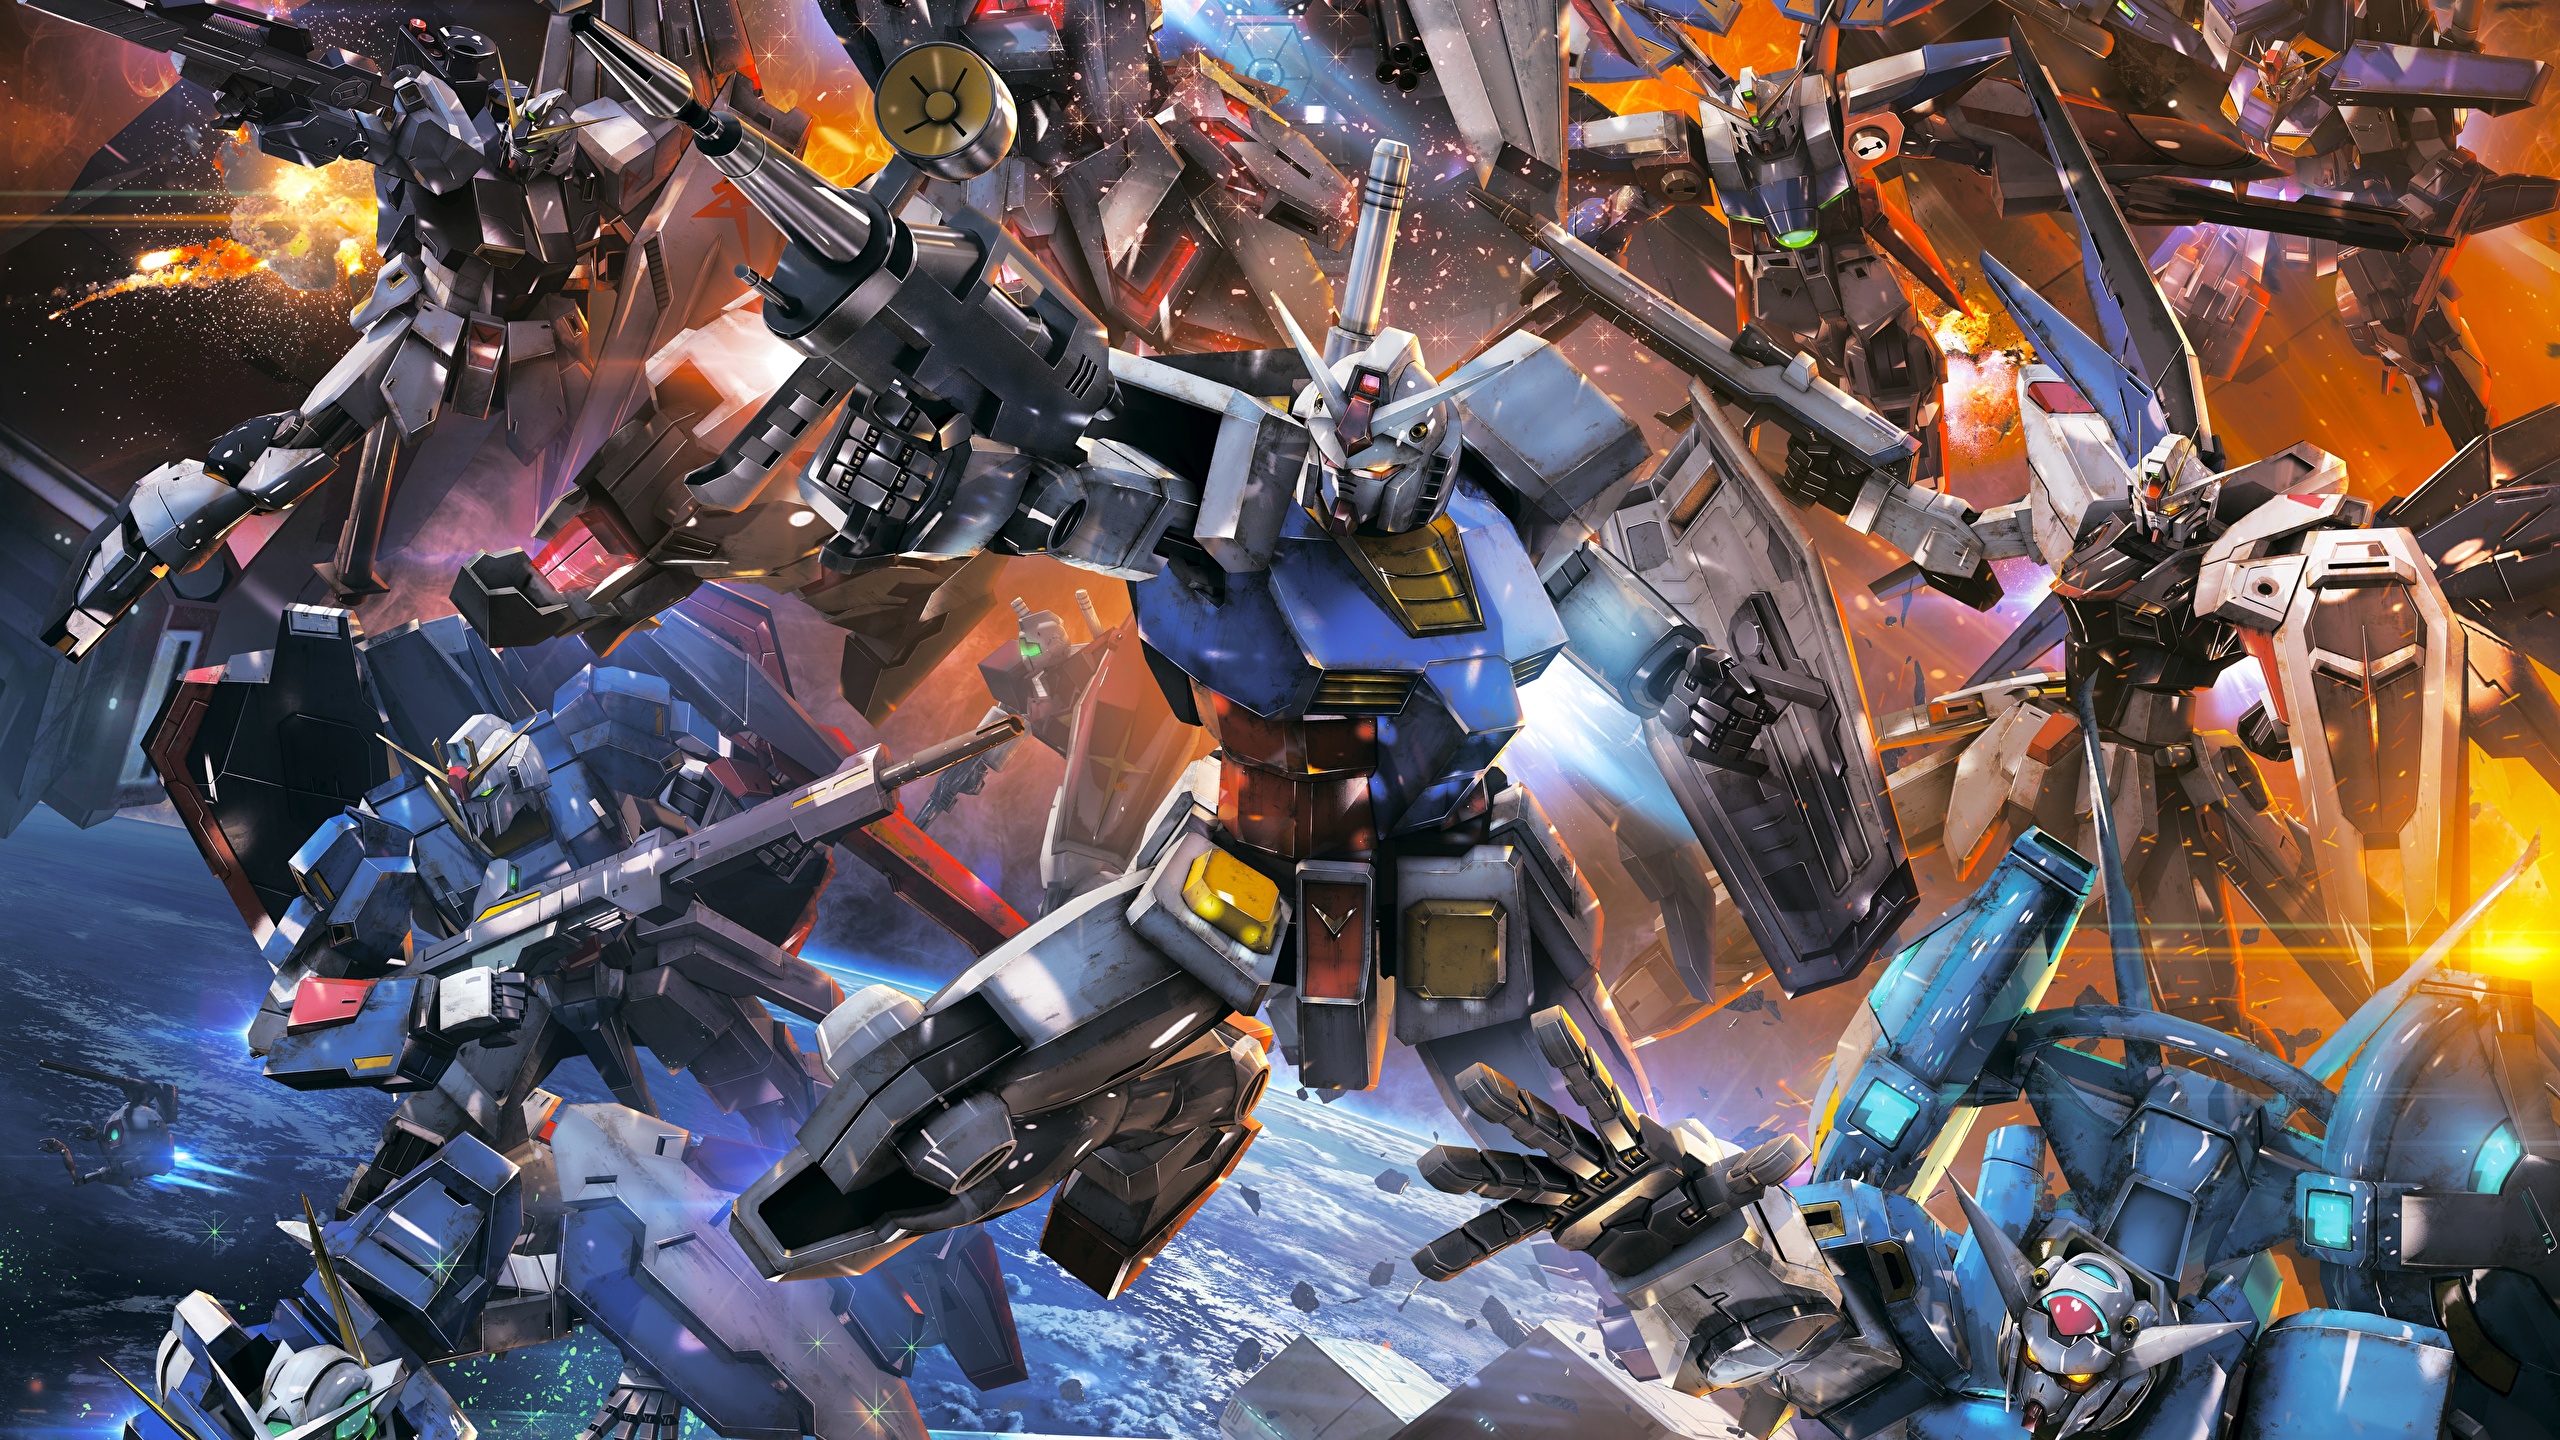 壁紙 2560x1440 Mobile Suit Gundam Extreme Vs Force ロボット ゲーム ファンタジー ダウンロード 写真